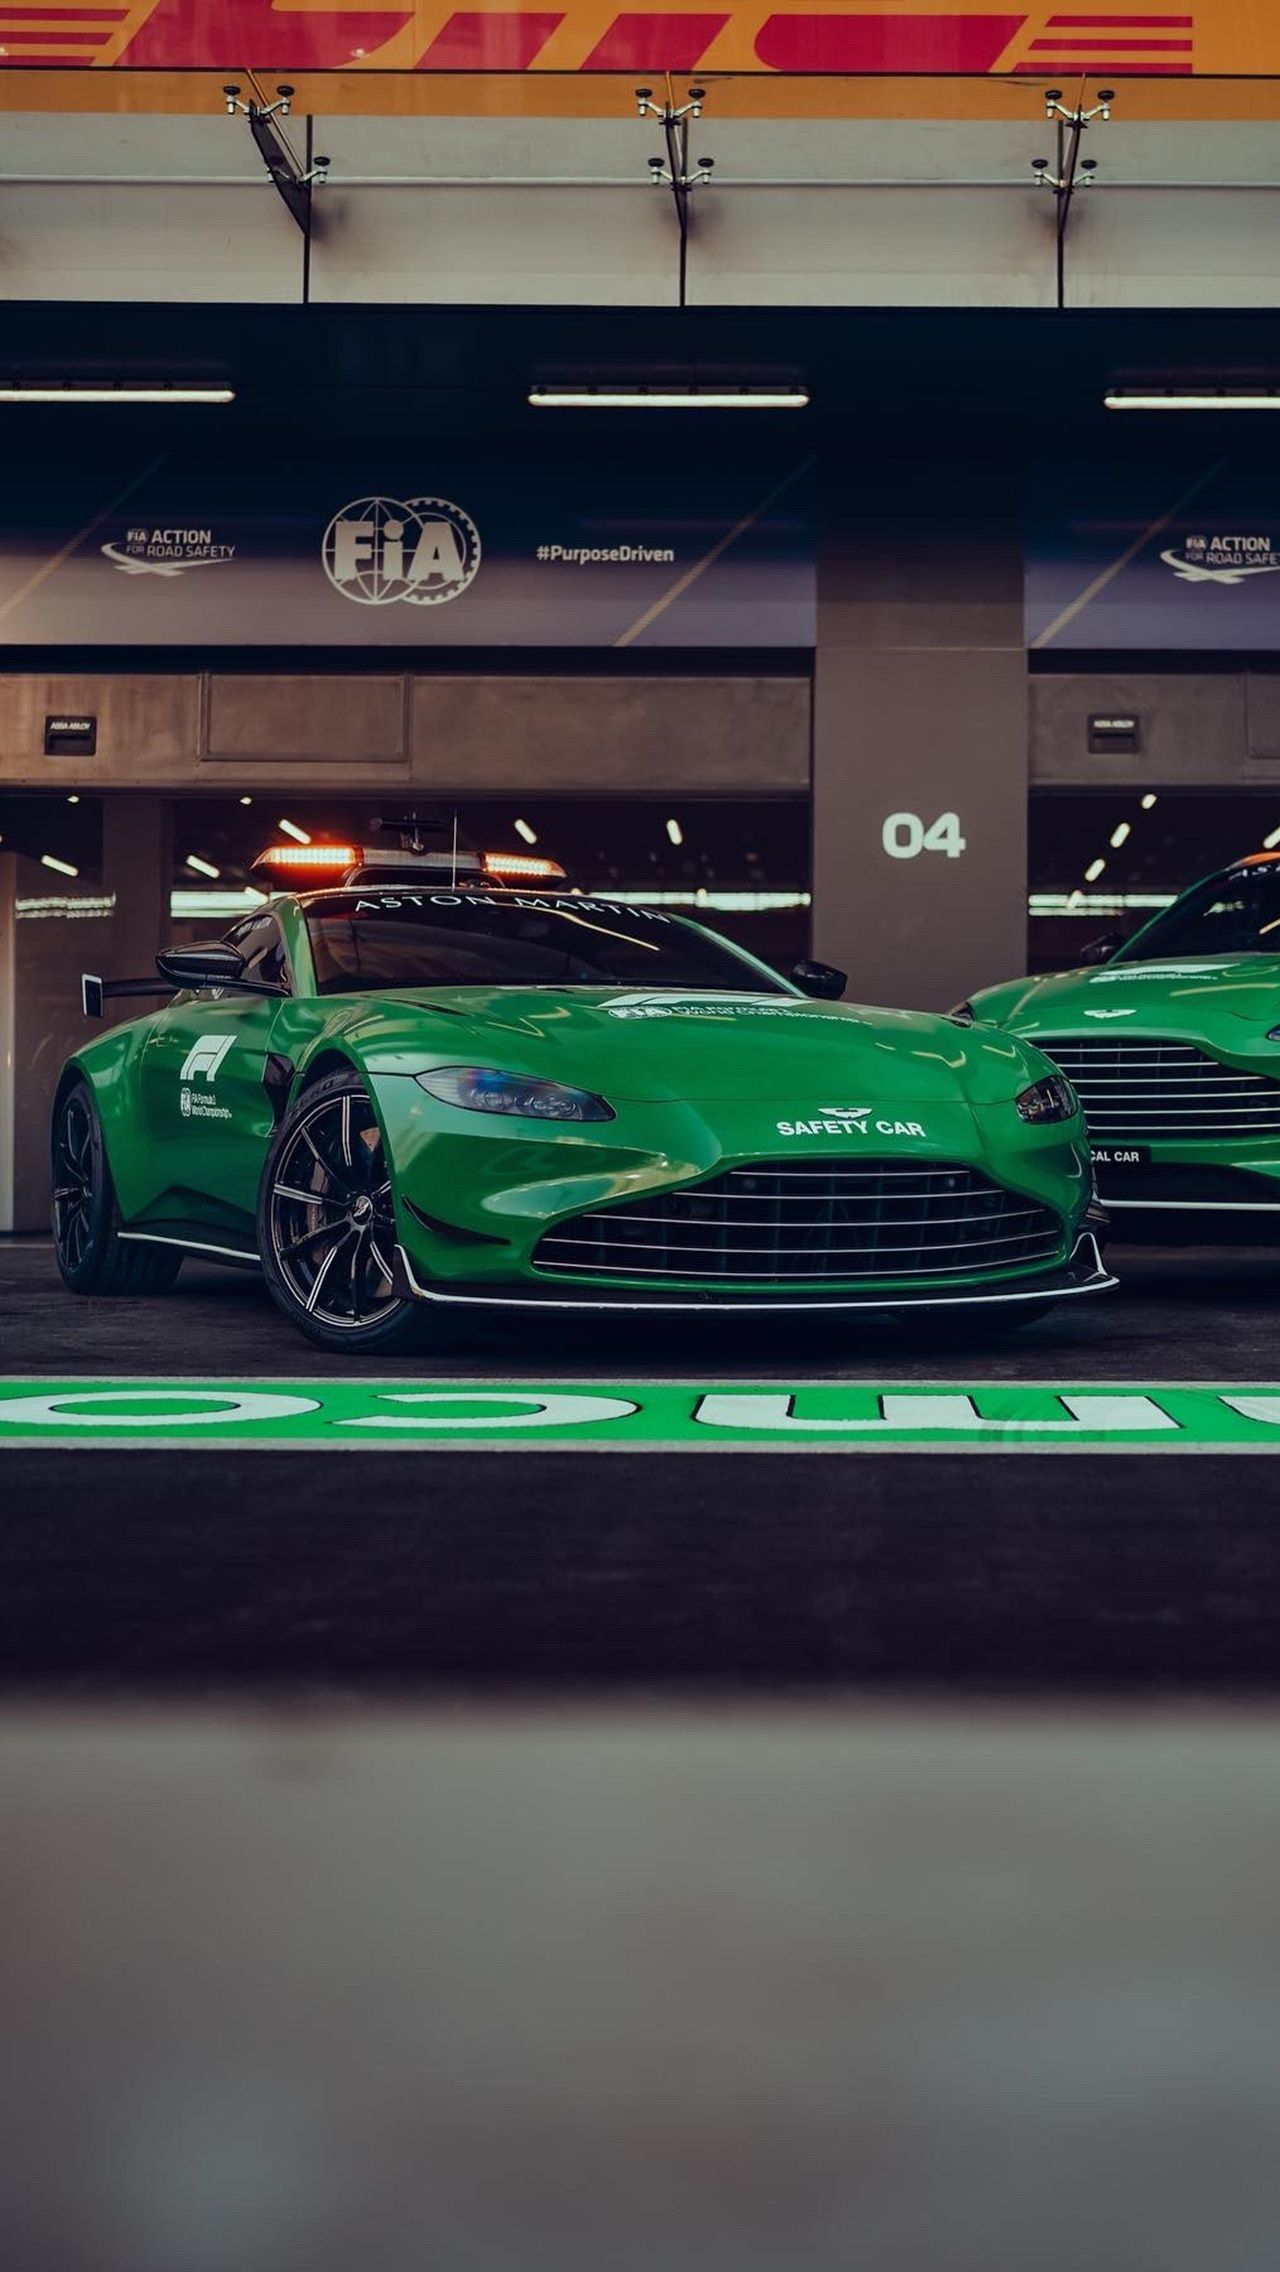 Машина безопасности от Aston Martin с места до 100 км/ч разгоняется за 3,6 секунды и развивает 310 км/ч максимальной скорости, а <a href="https://www.championat.ru/auto/article-4636327-novye-sejfti-kar-i-medicinskij-avtomobil-ot-mersedesa-dlya-formuly-1-harakteristiki-i-foto.html">сейфти-кар от Mercedes-AMG</a> проделывает аналогичное упражнение за 3,2 с и показывает потолок в 325 км/ч.